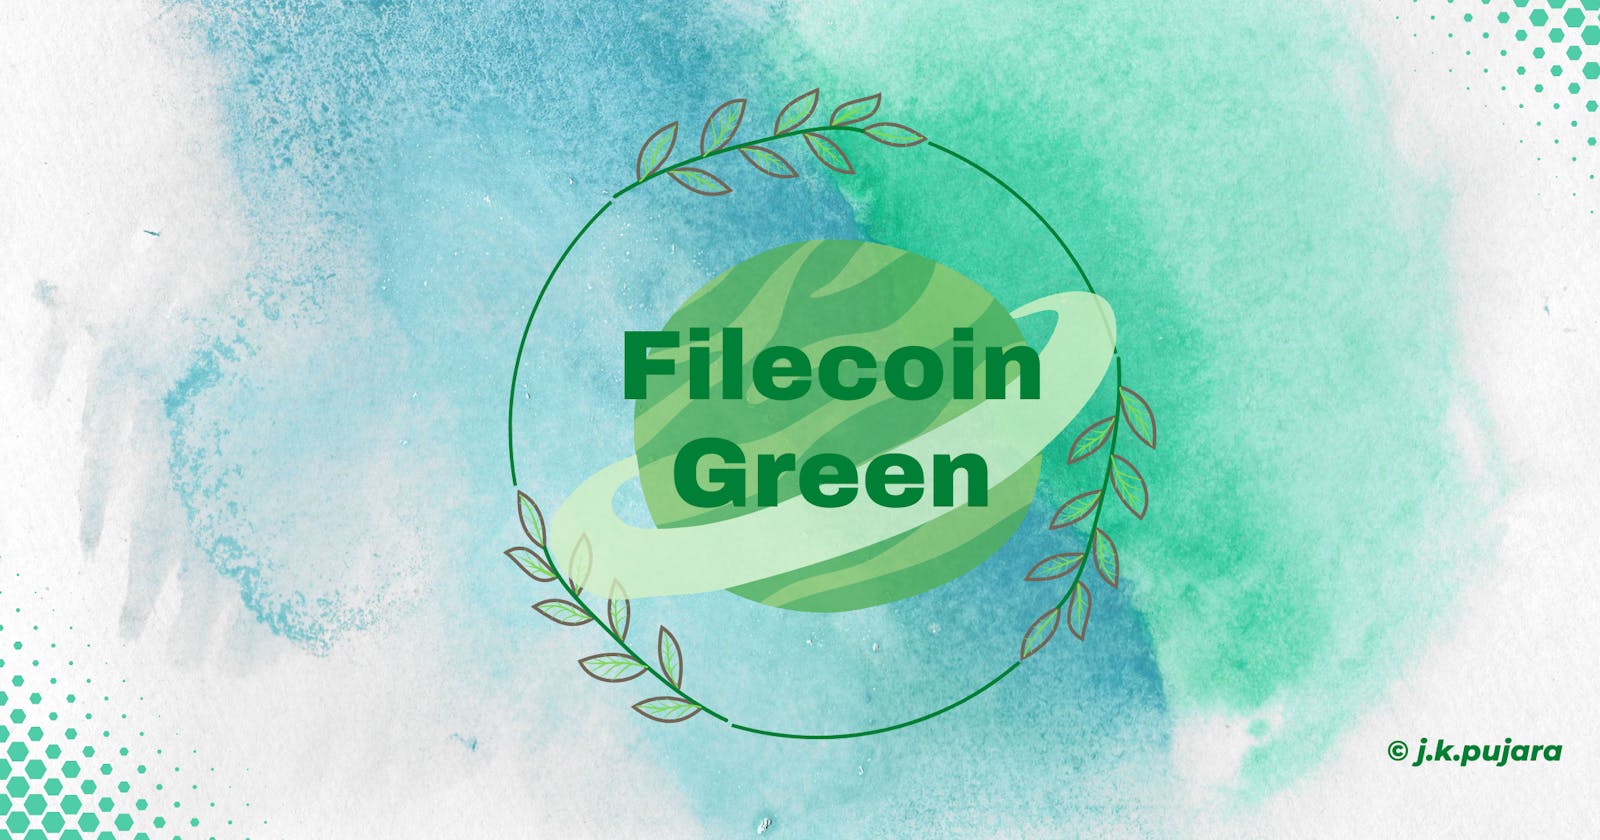 Filecoin Green: Filecoin Going Green